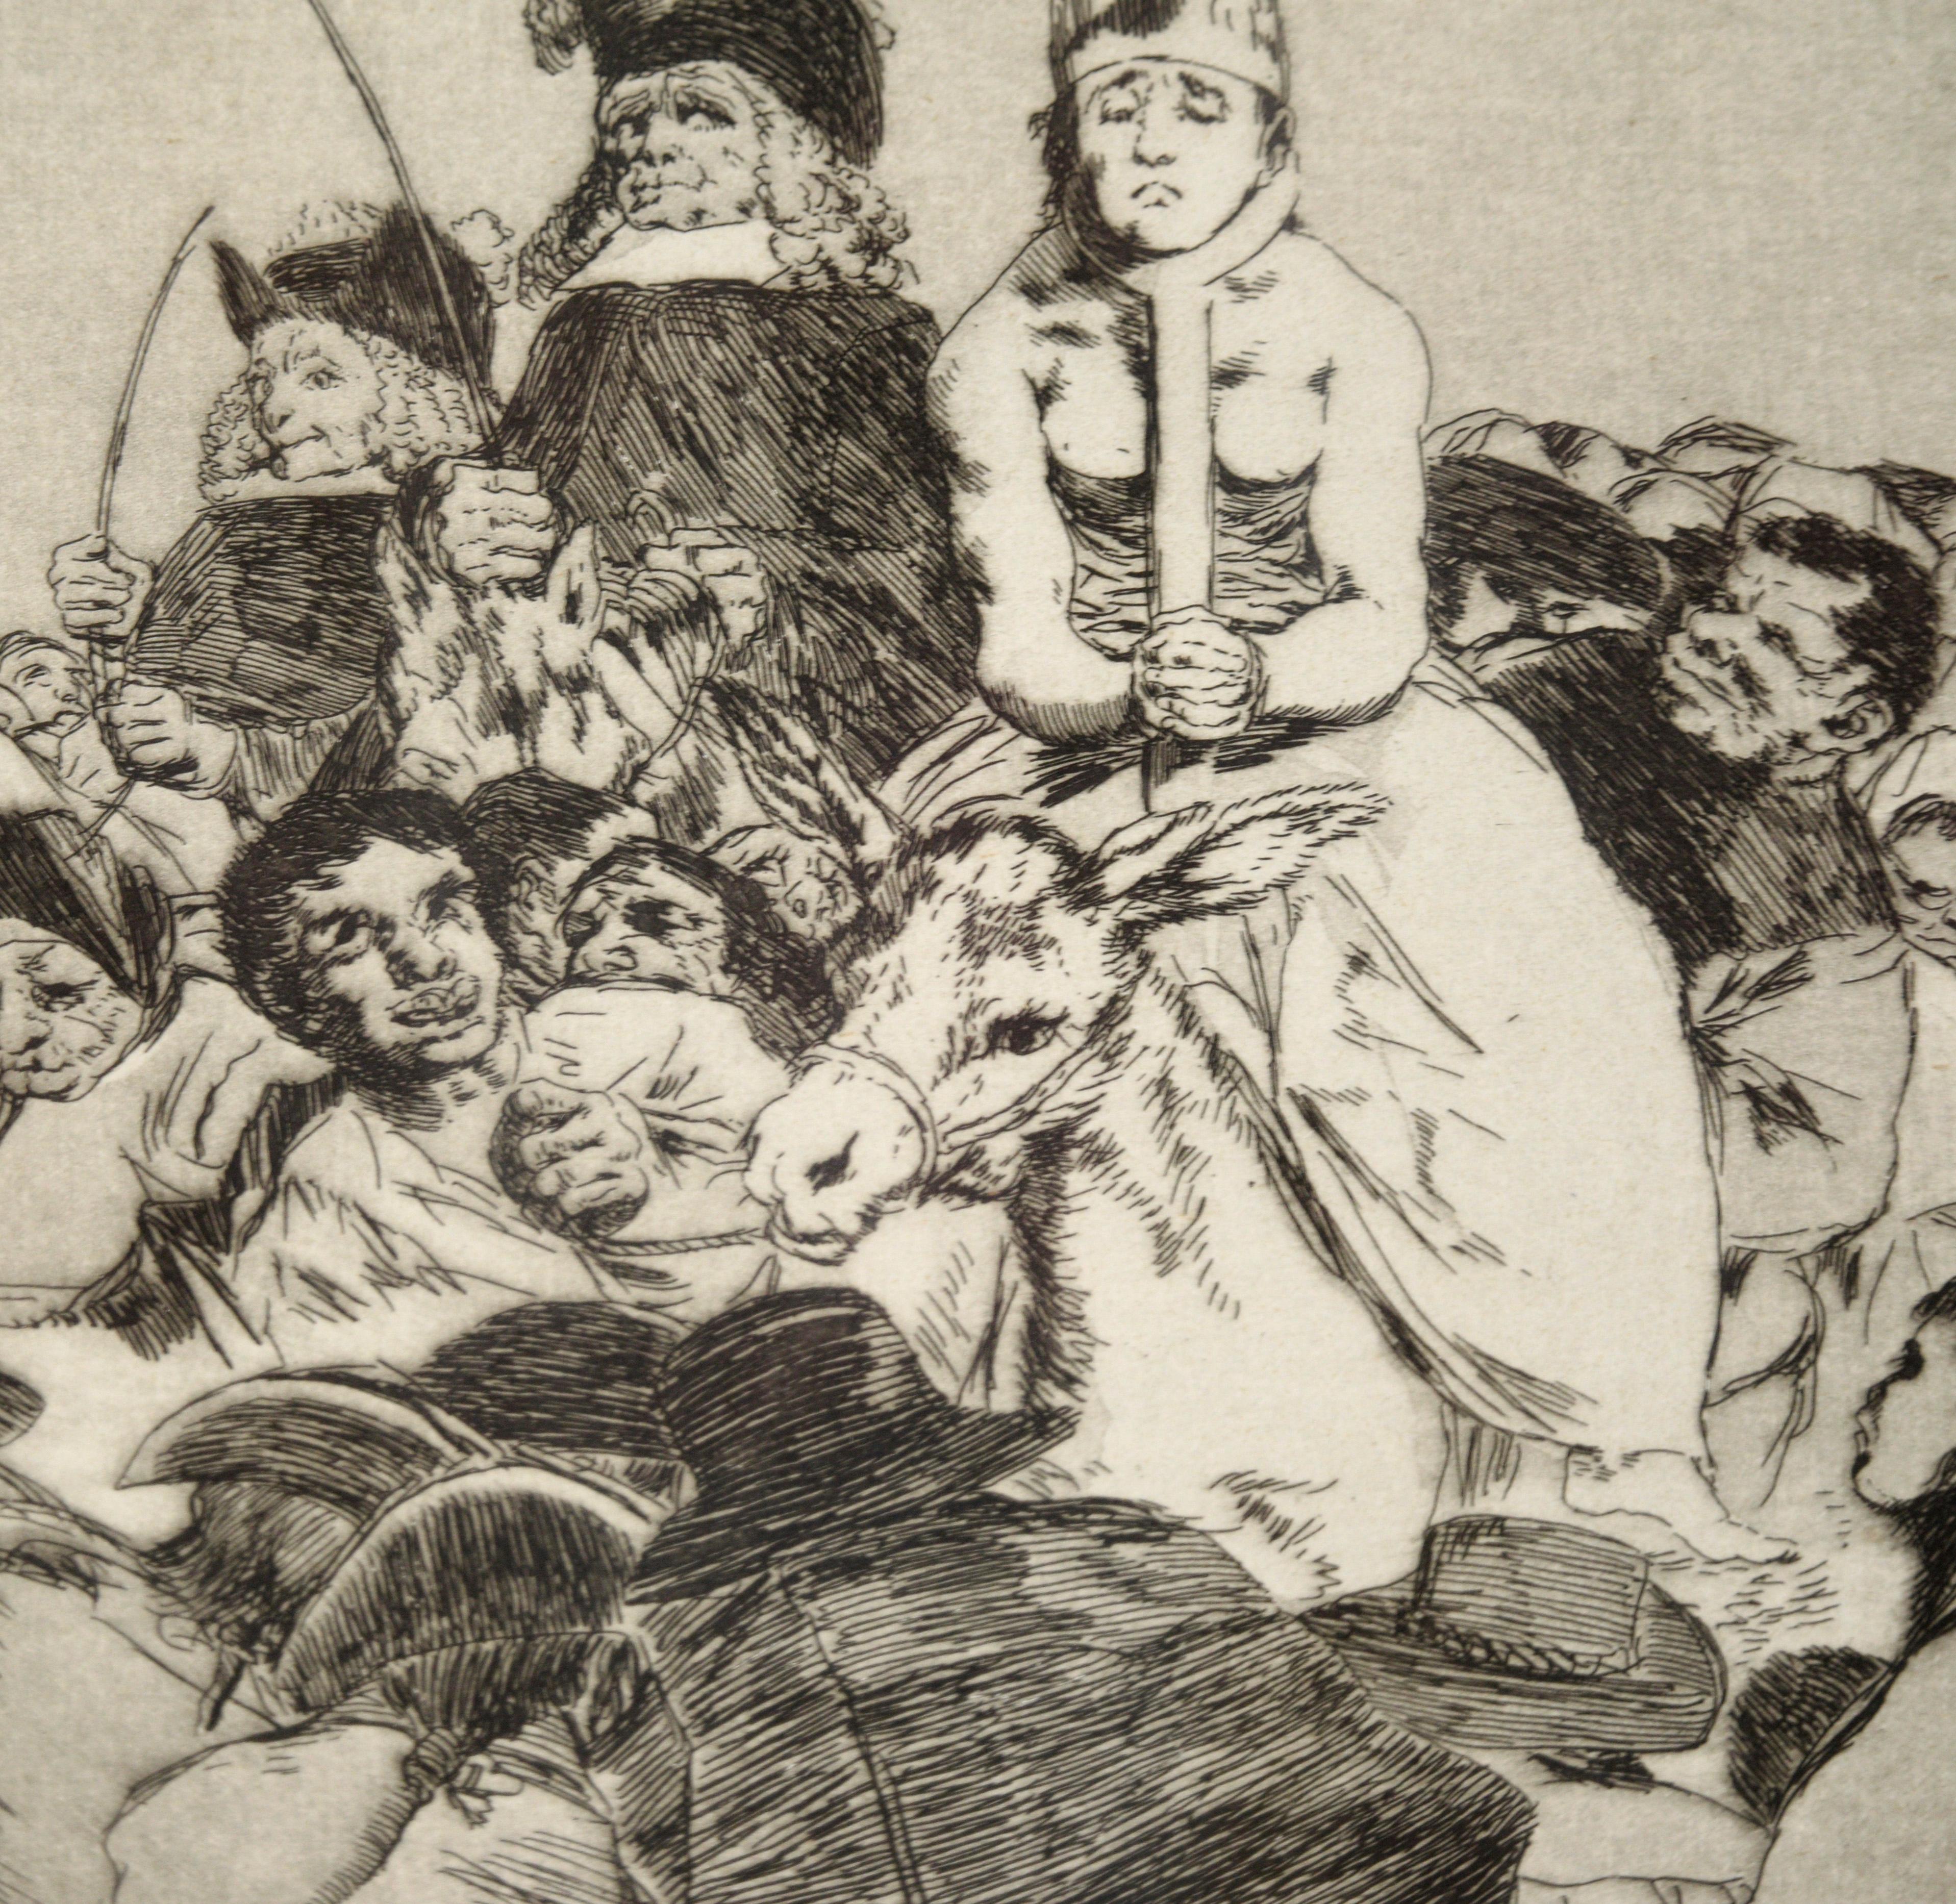 « Nohubo remedio » (Il n'y avait pas de souvenir) - eau-forte et aquatinte sur papier - Maîtres anciens Print par Francisco Goya